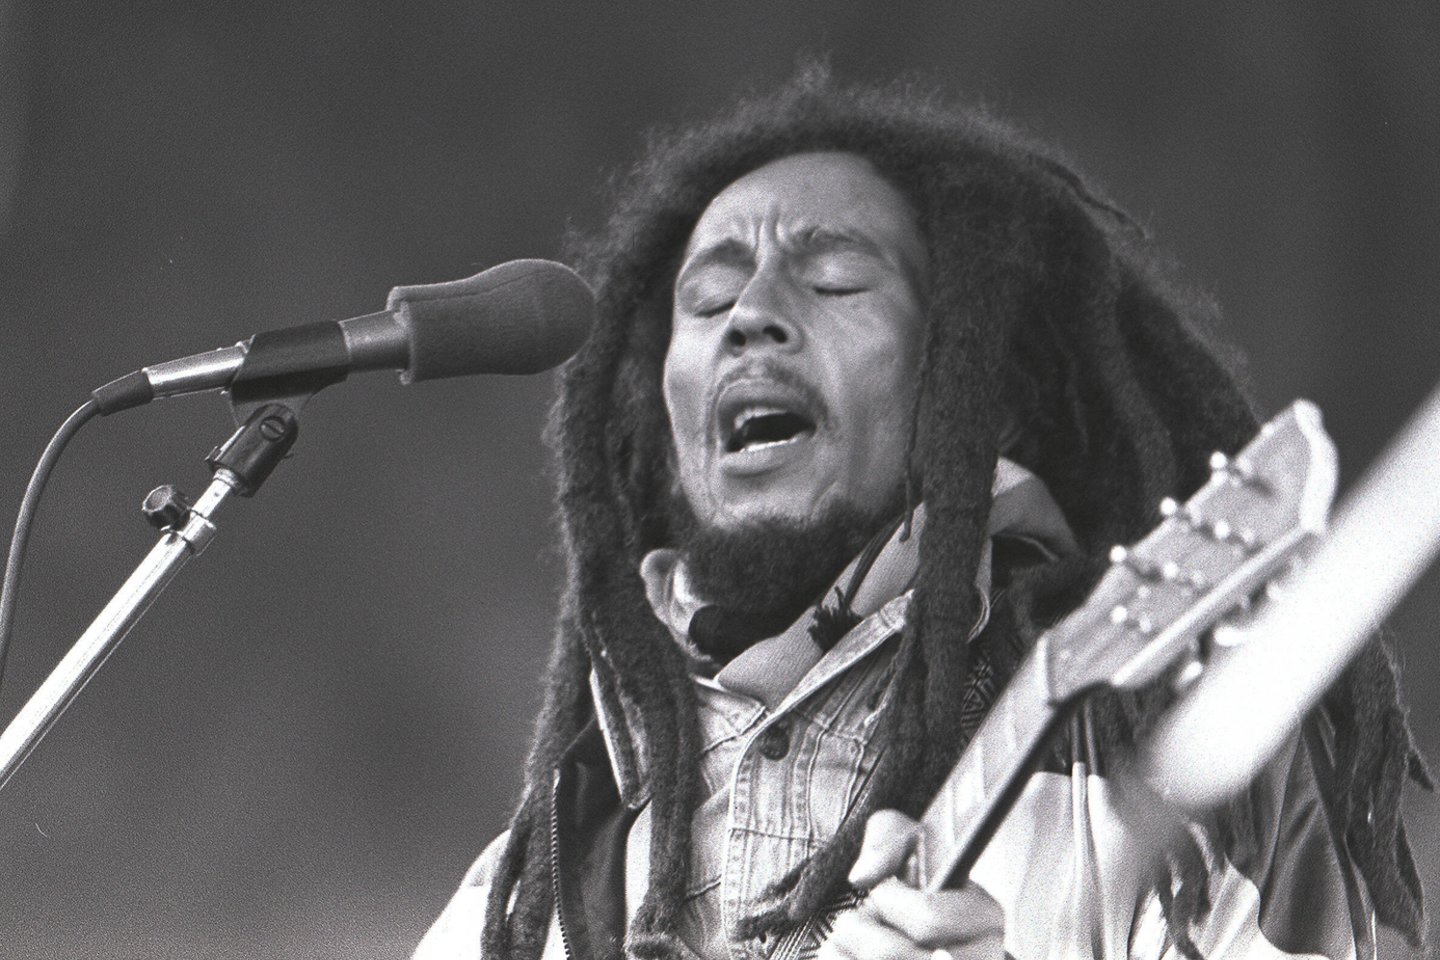  Bobas Marley<br>Scanpix/imago images/Sammy Minkoff nuotr.